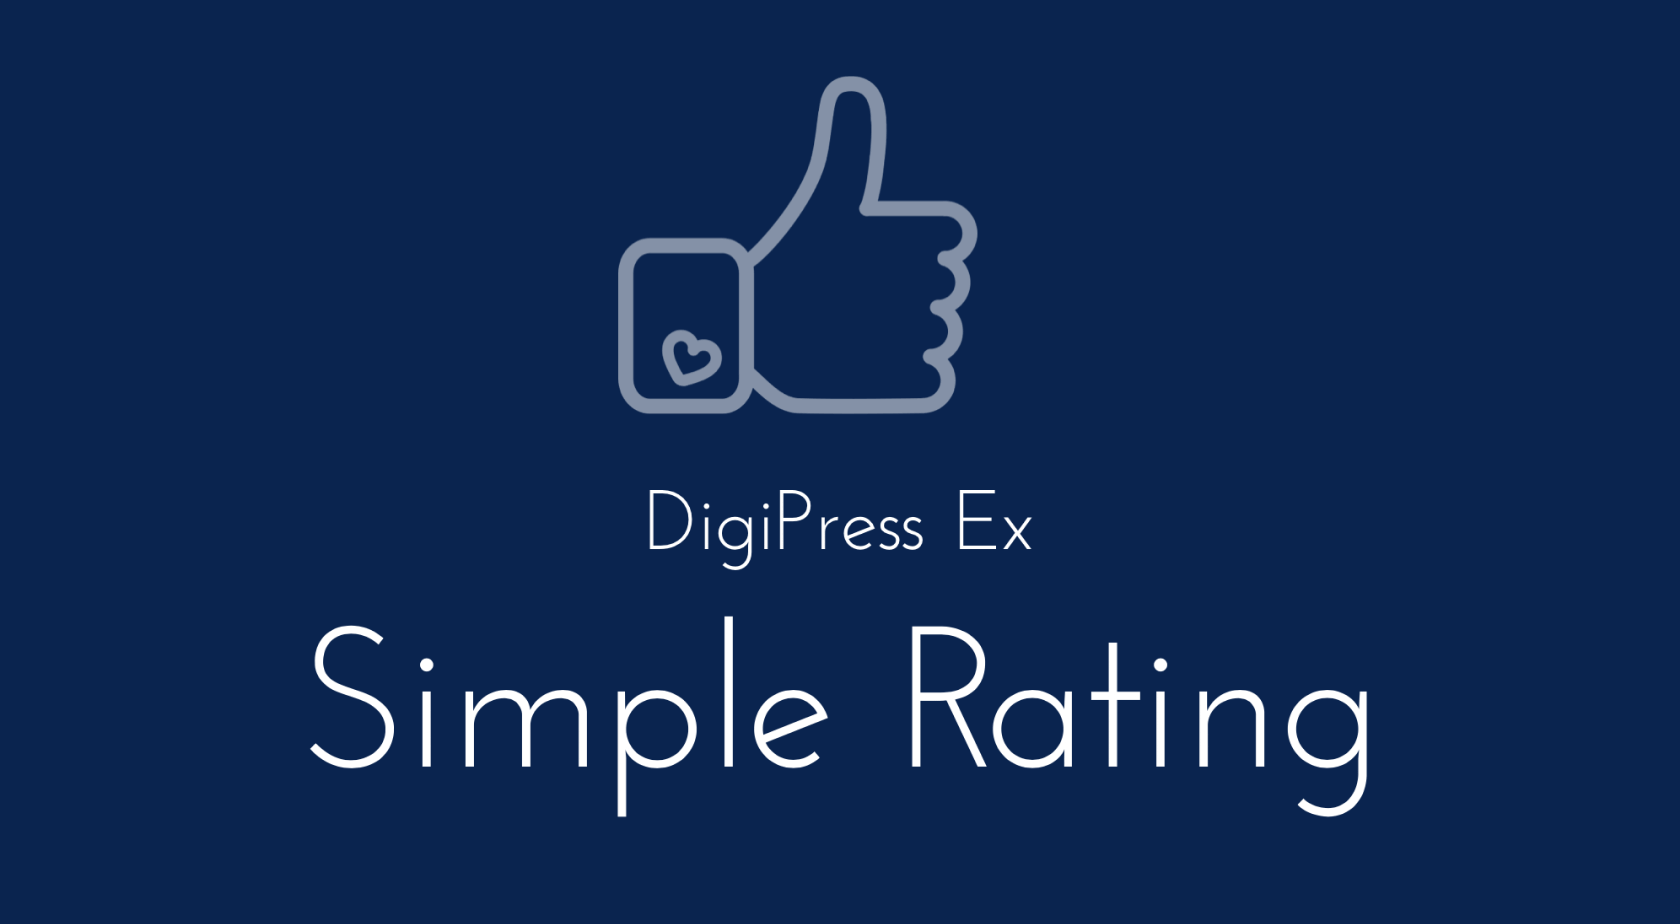 DigiPress Ex - Simple Rating - 記事に評価機能を追加&高評価ランキングを表示